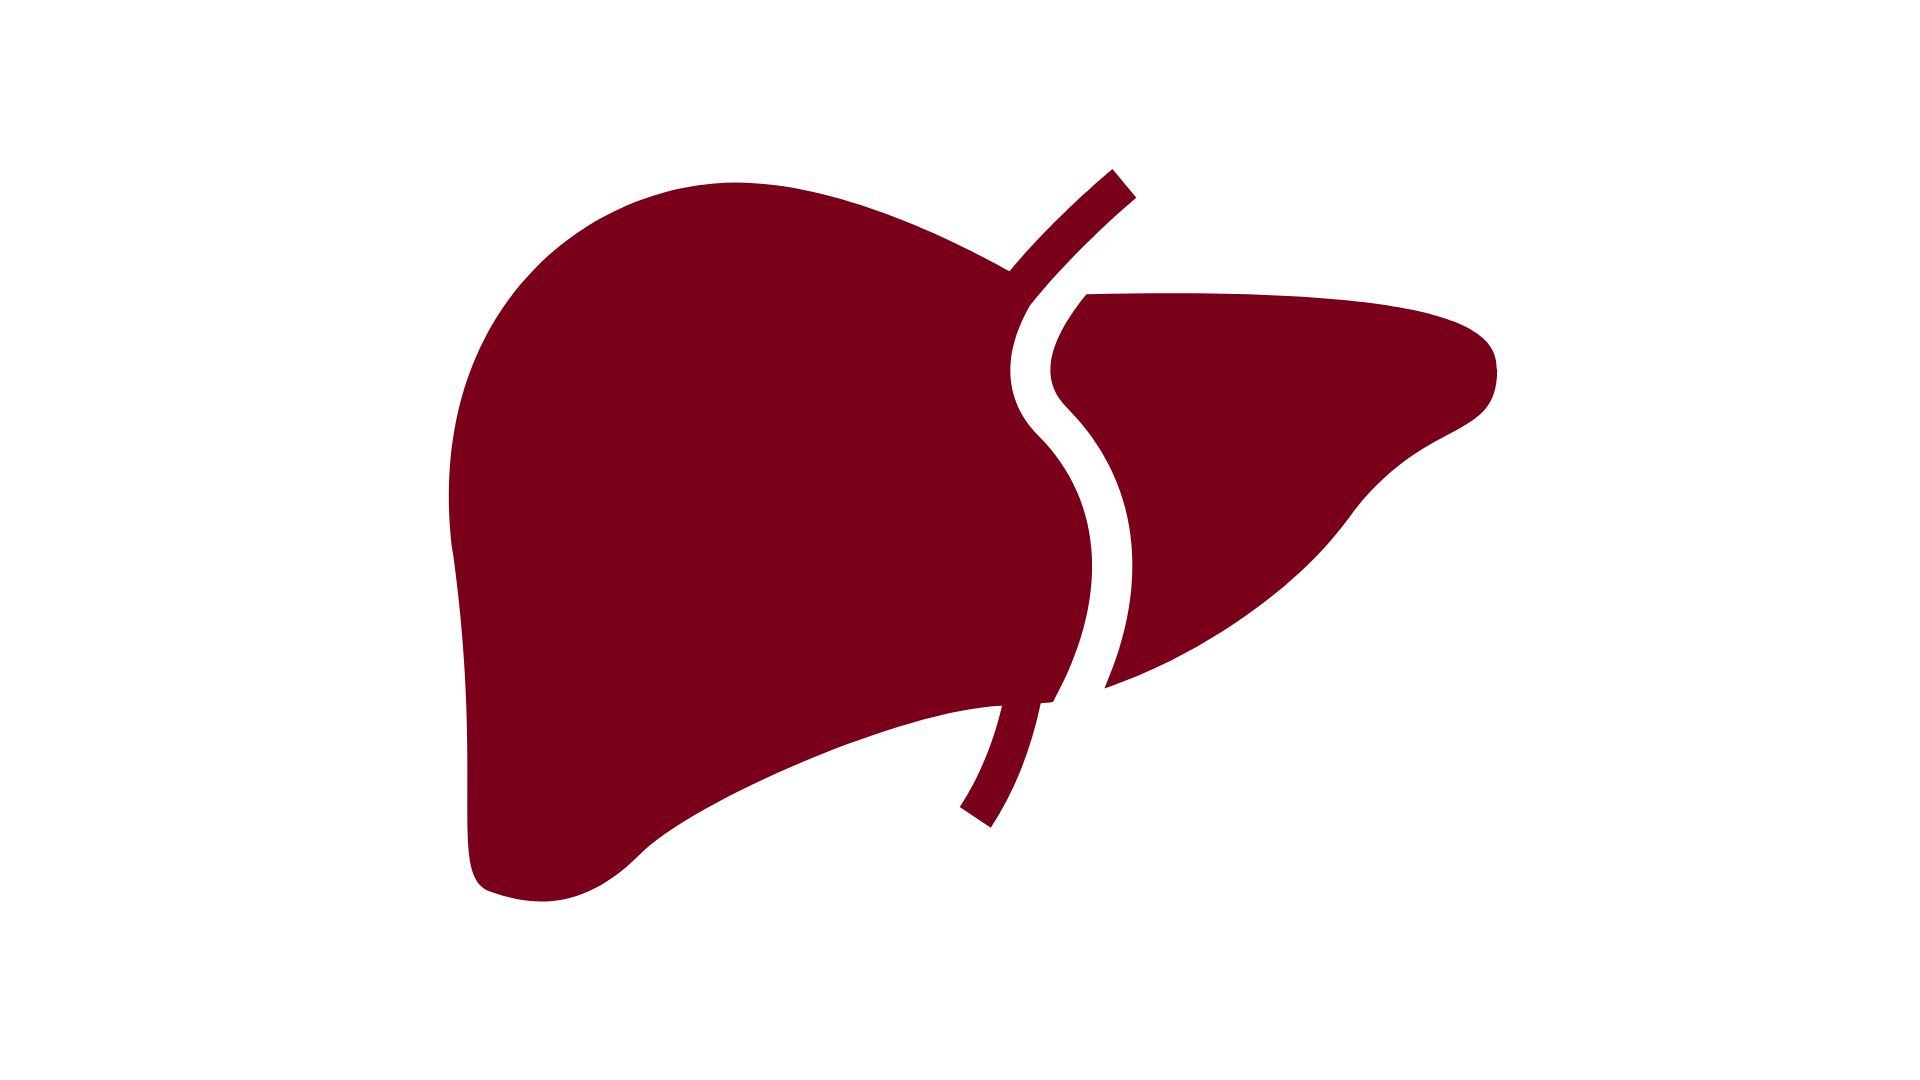 Liver transplant program outcomes